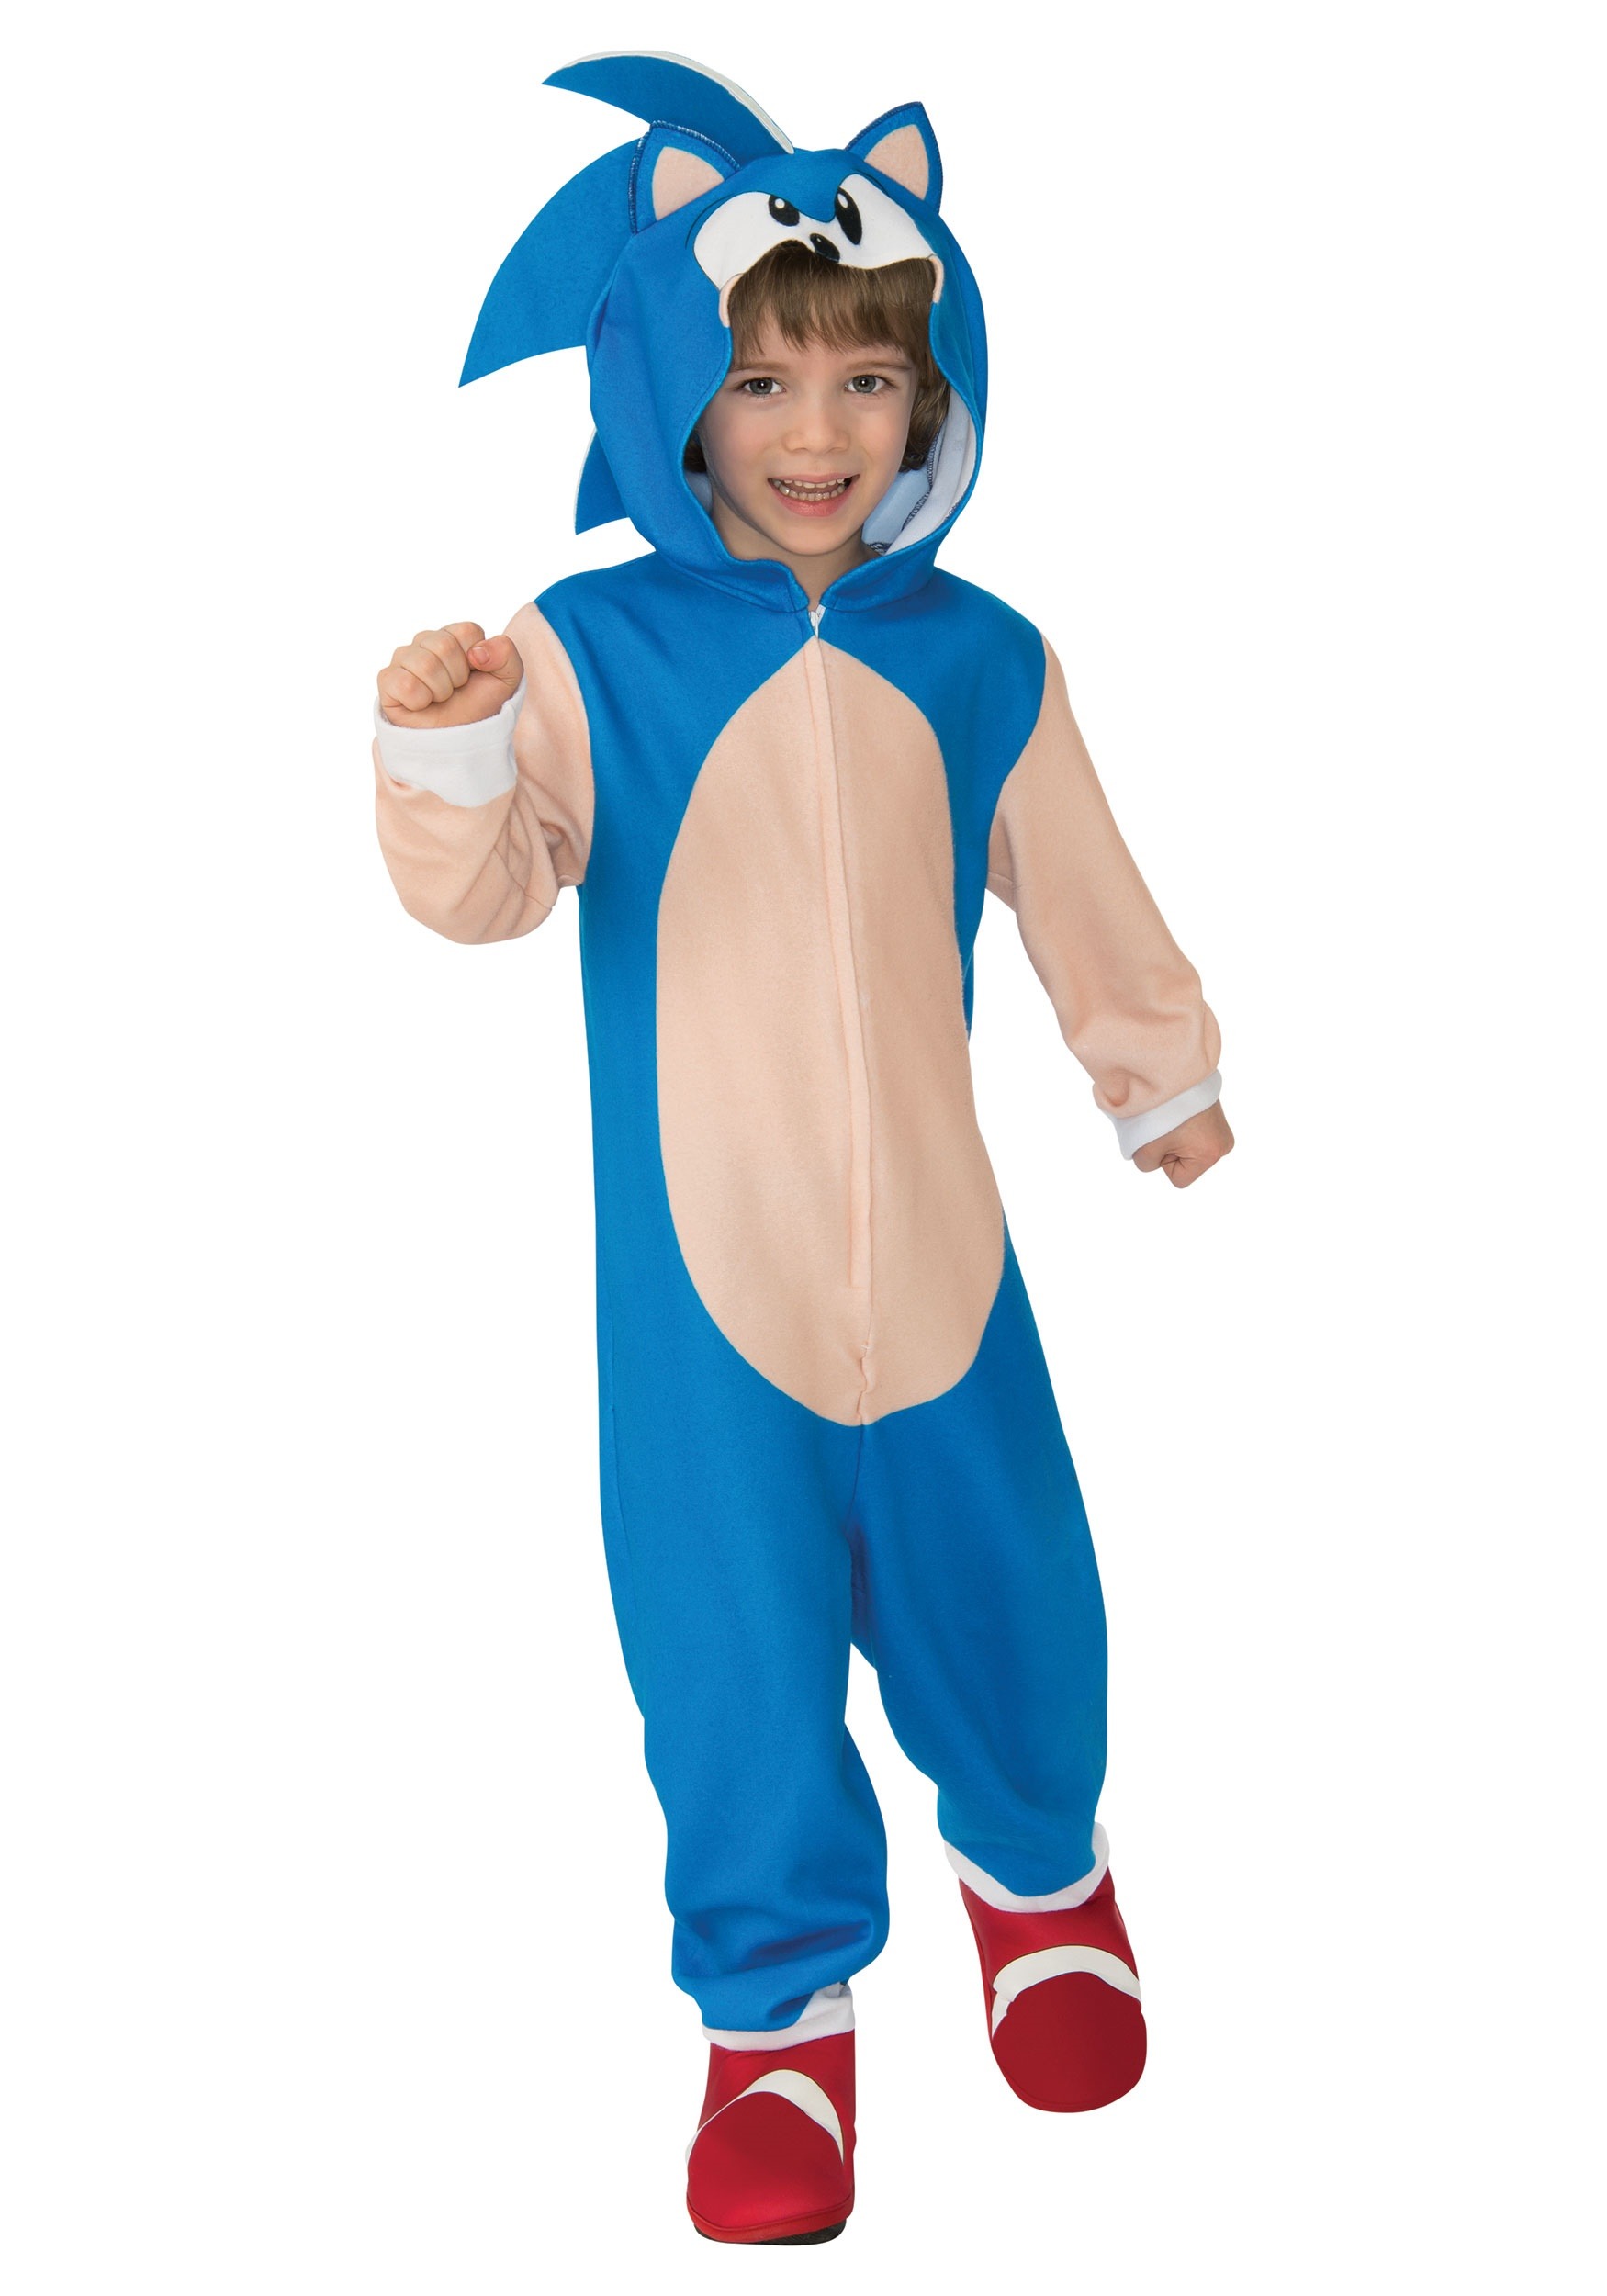 Noticia - Así es el nuevo disfraz para Halloween de Sonic The